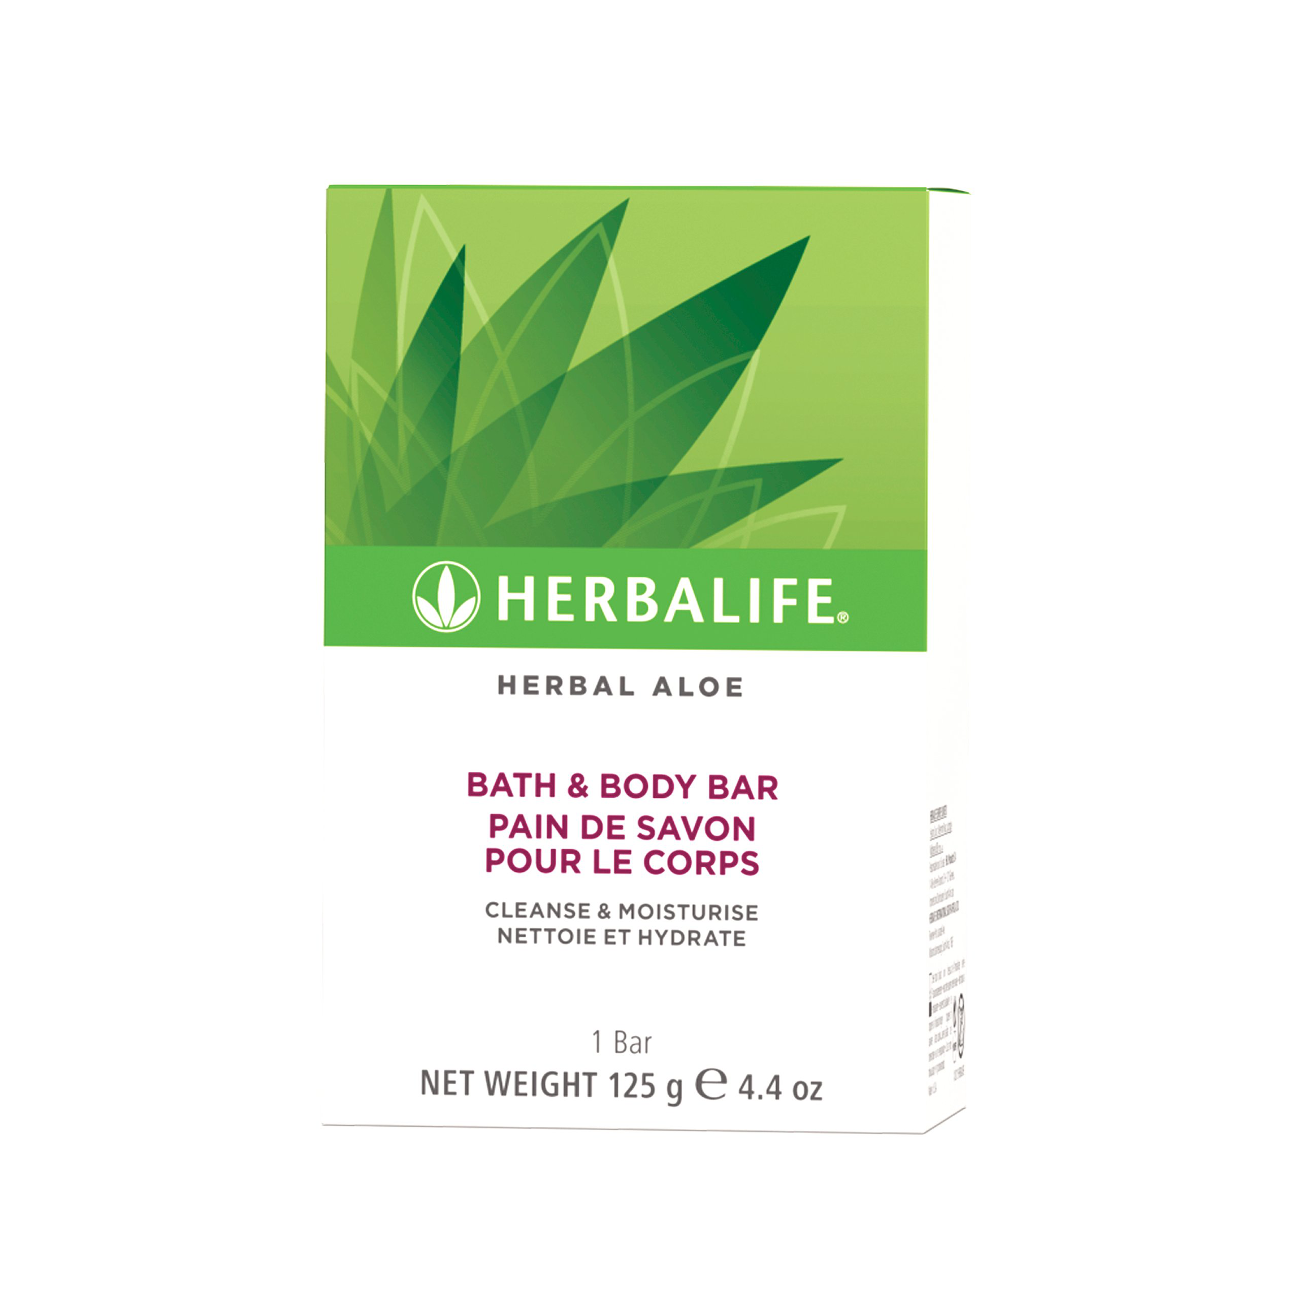 Herbal Aloe Bath & Body Bar  product shot